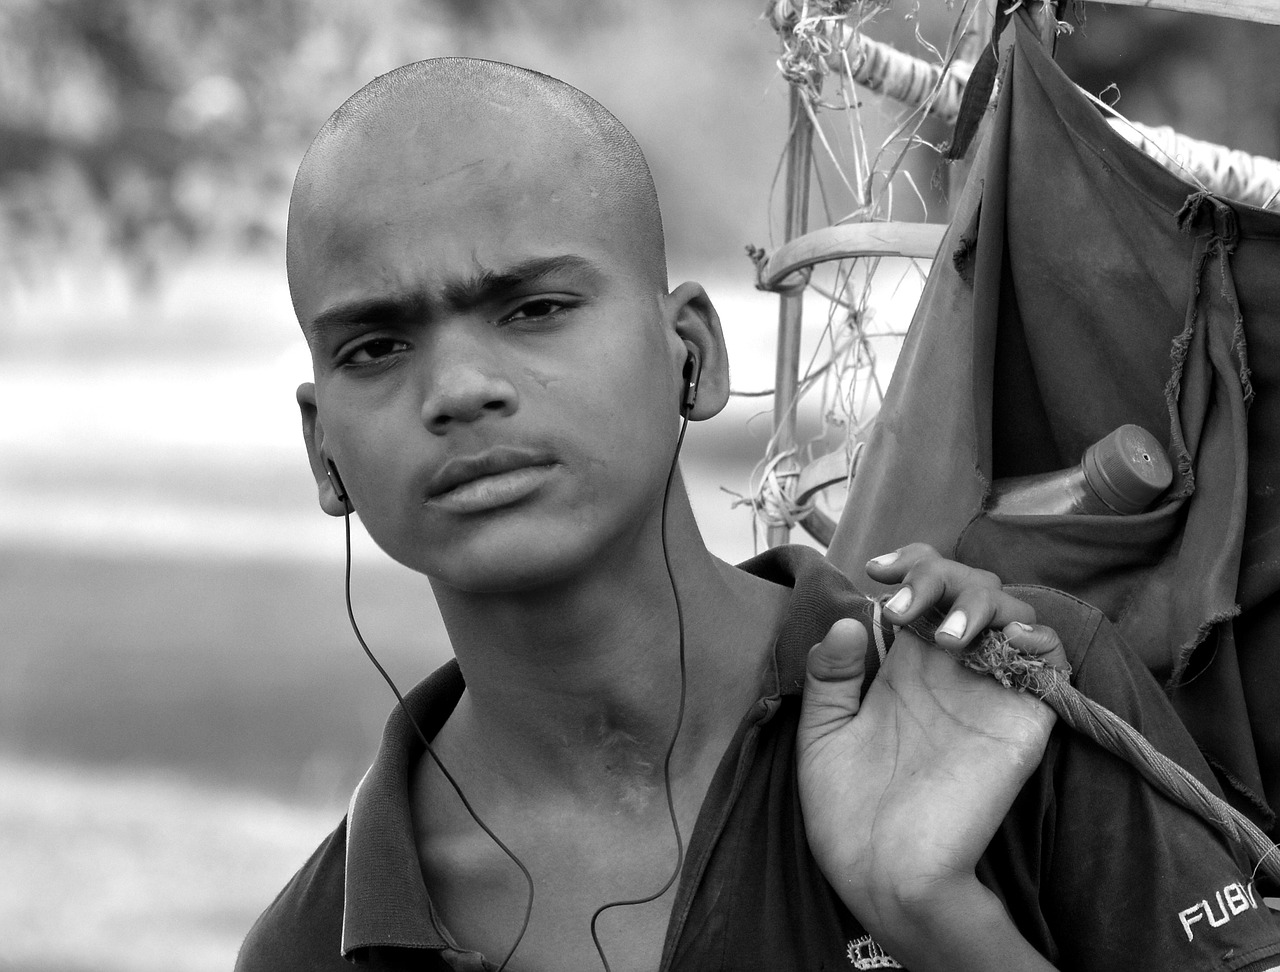 street vendor papadum seller young man free photo